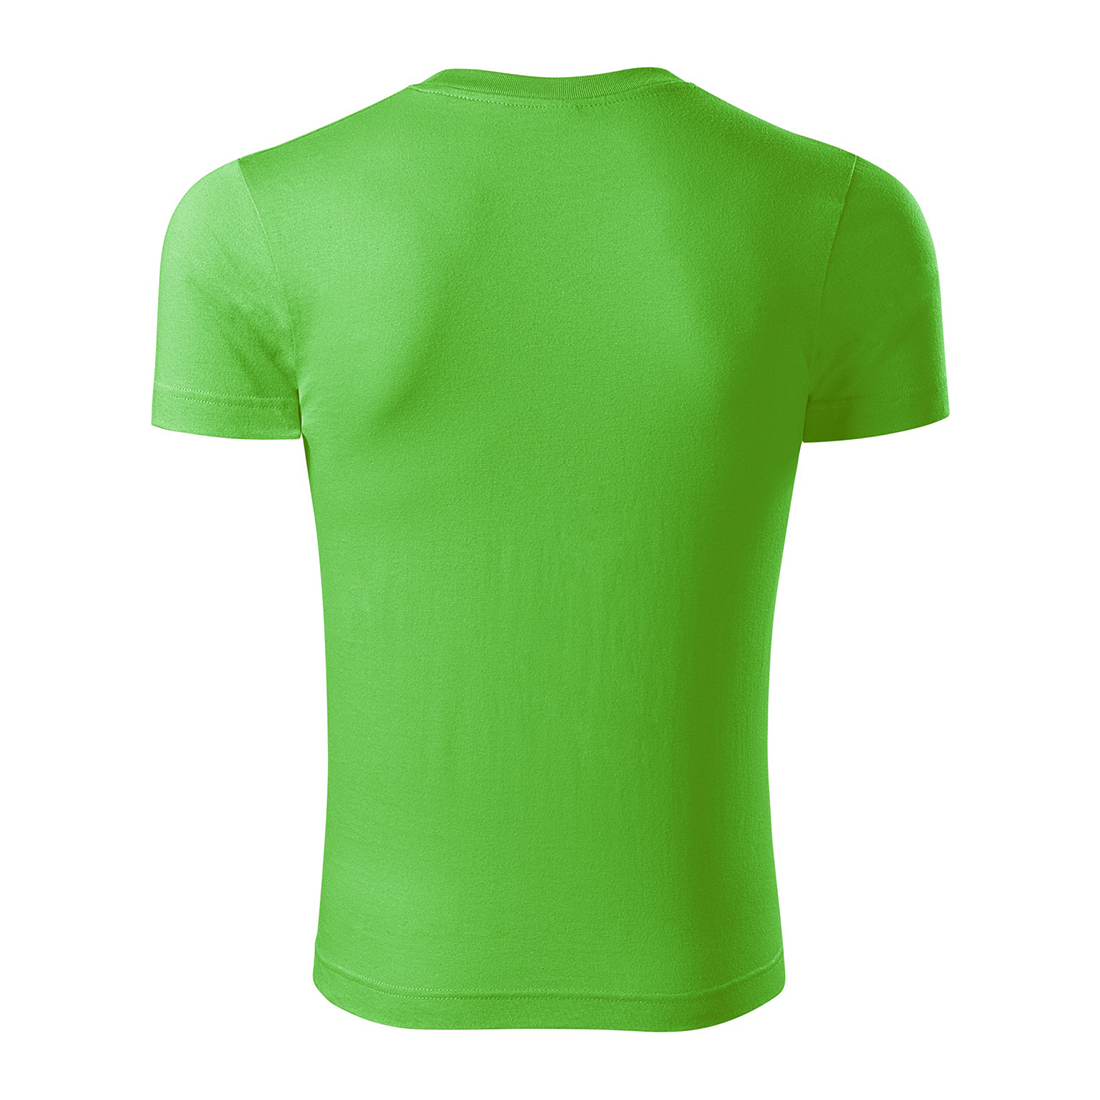 T-shirt unisexe en coton - Les vêtements de protection